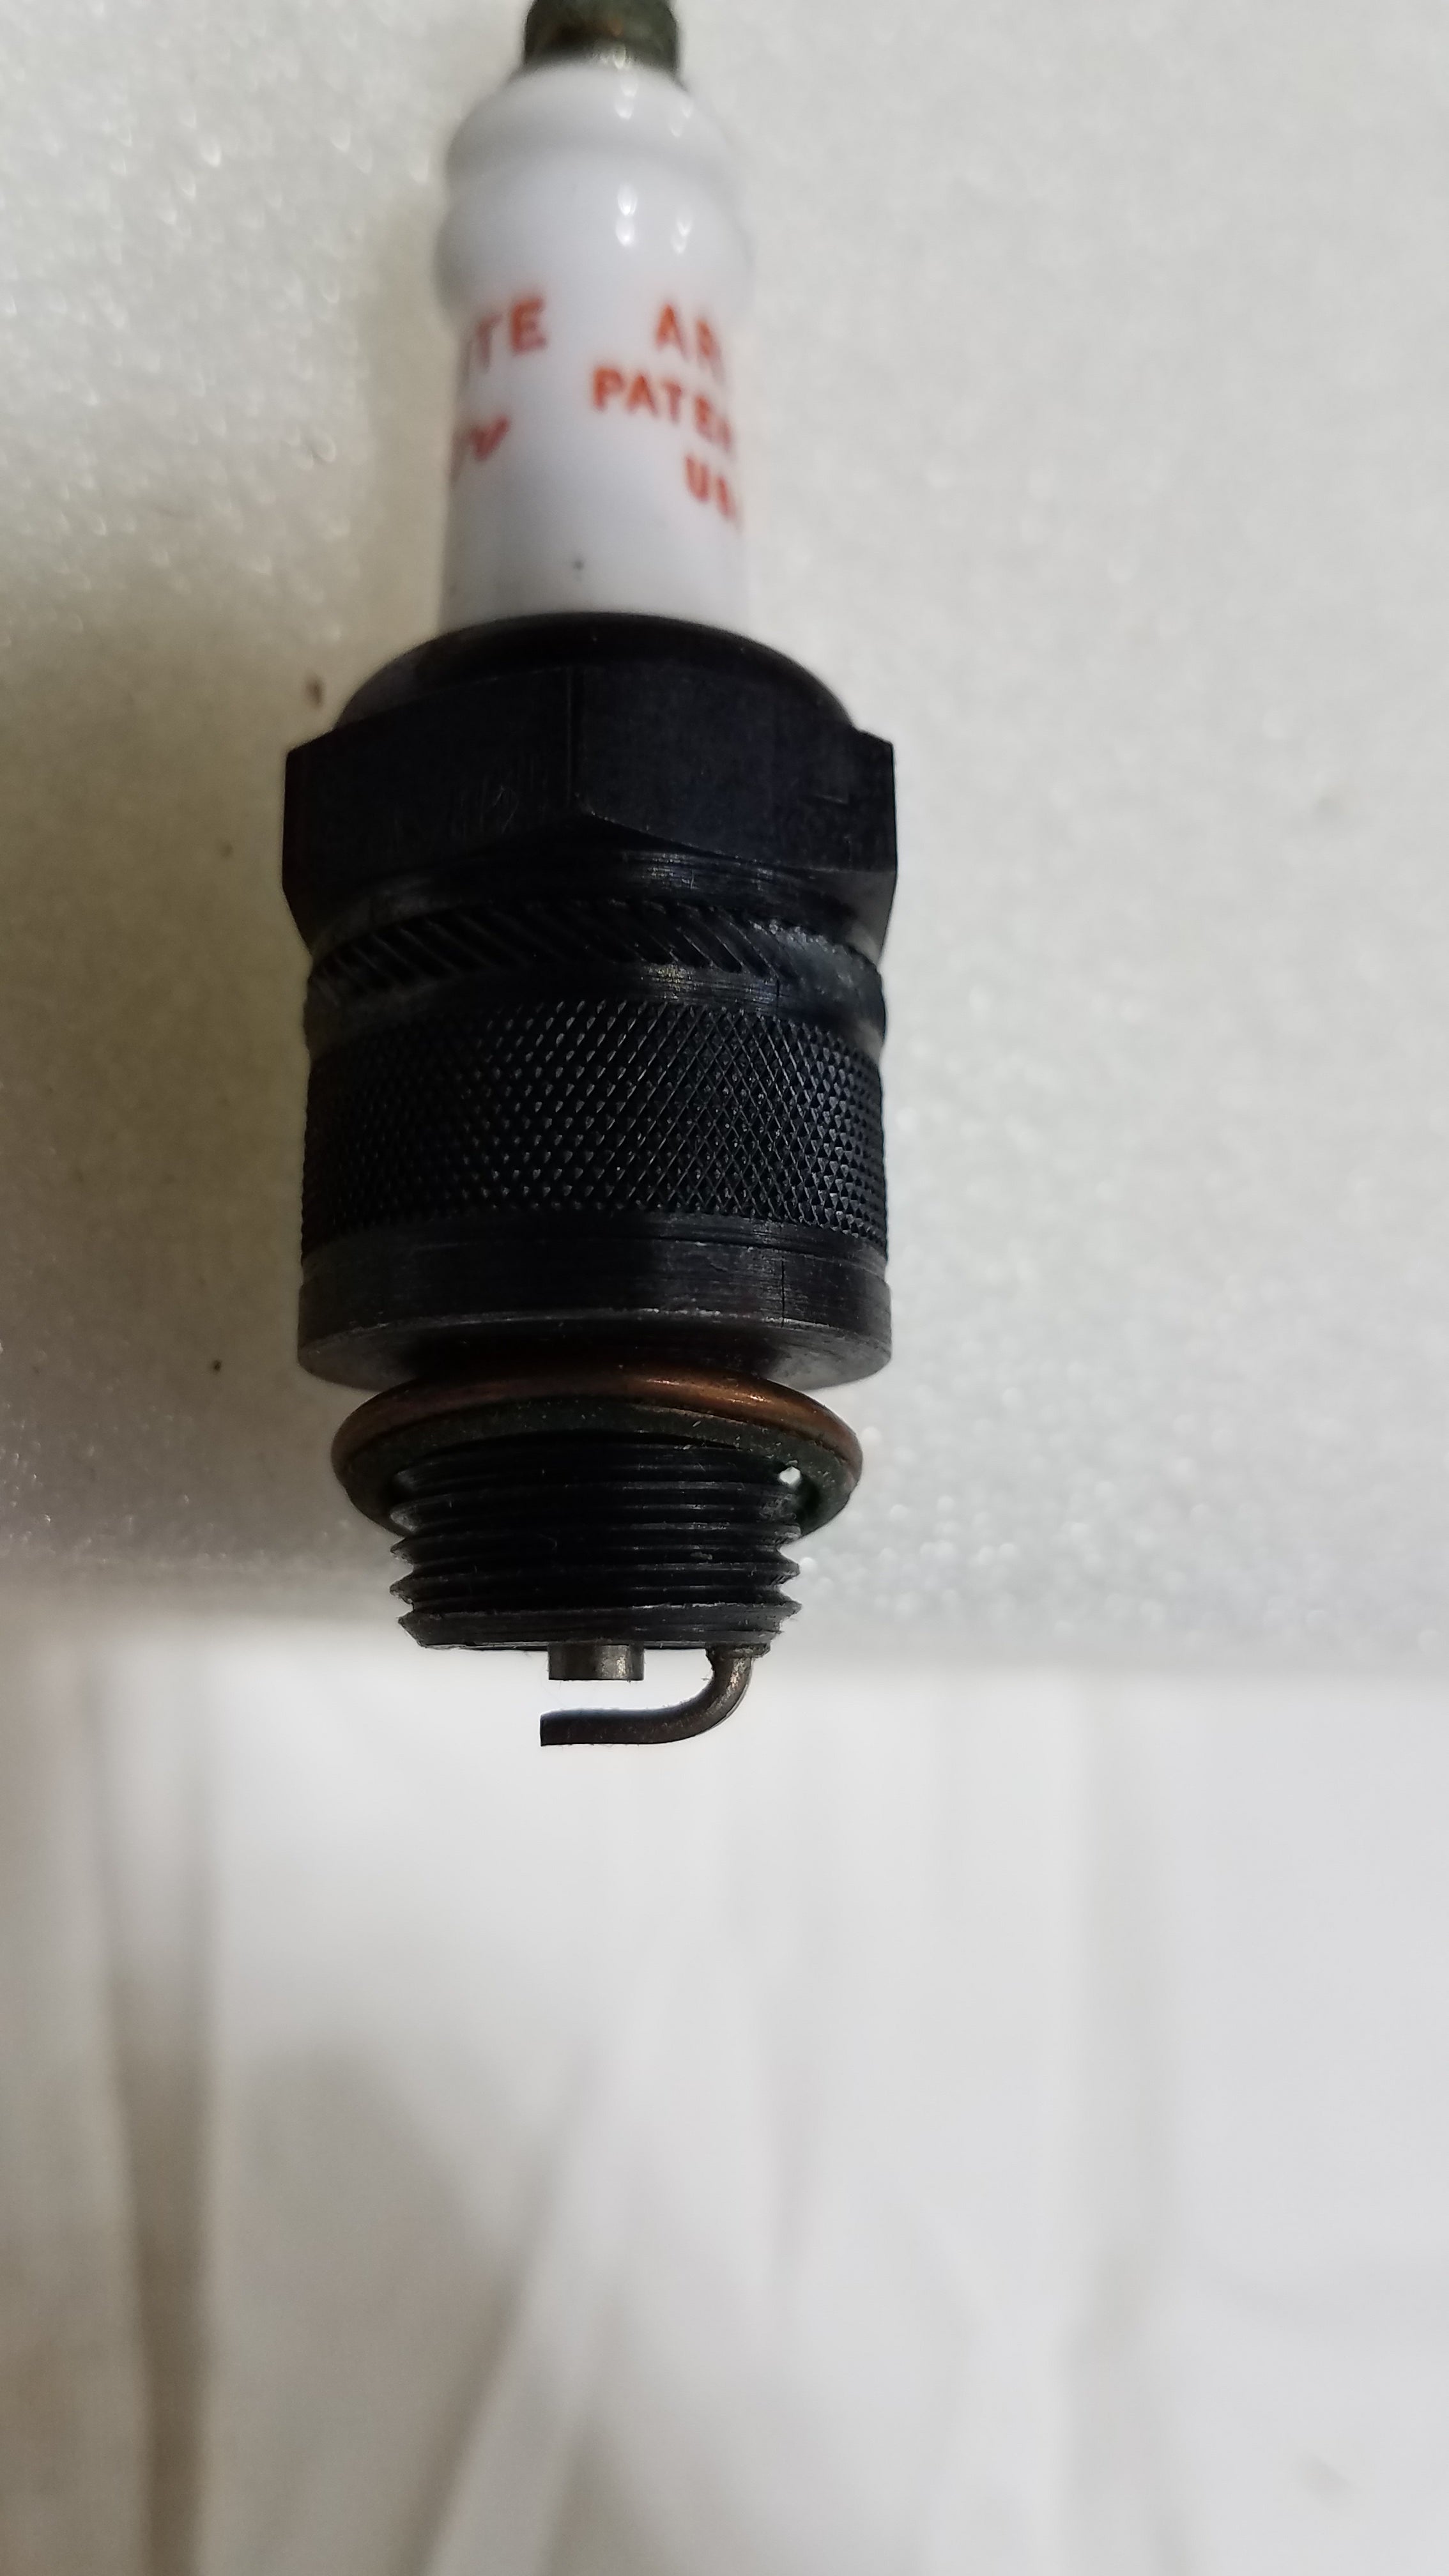 Rare Vintage Auto-lite Resistor AR 10 Patended USA Spark Plug 2 3/4" length